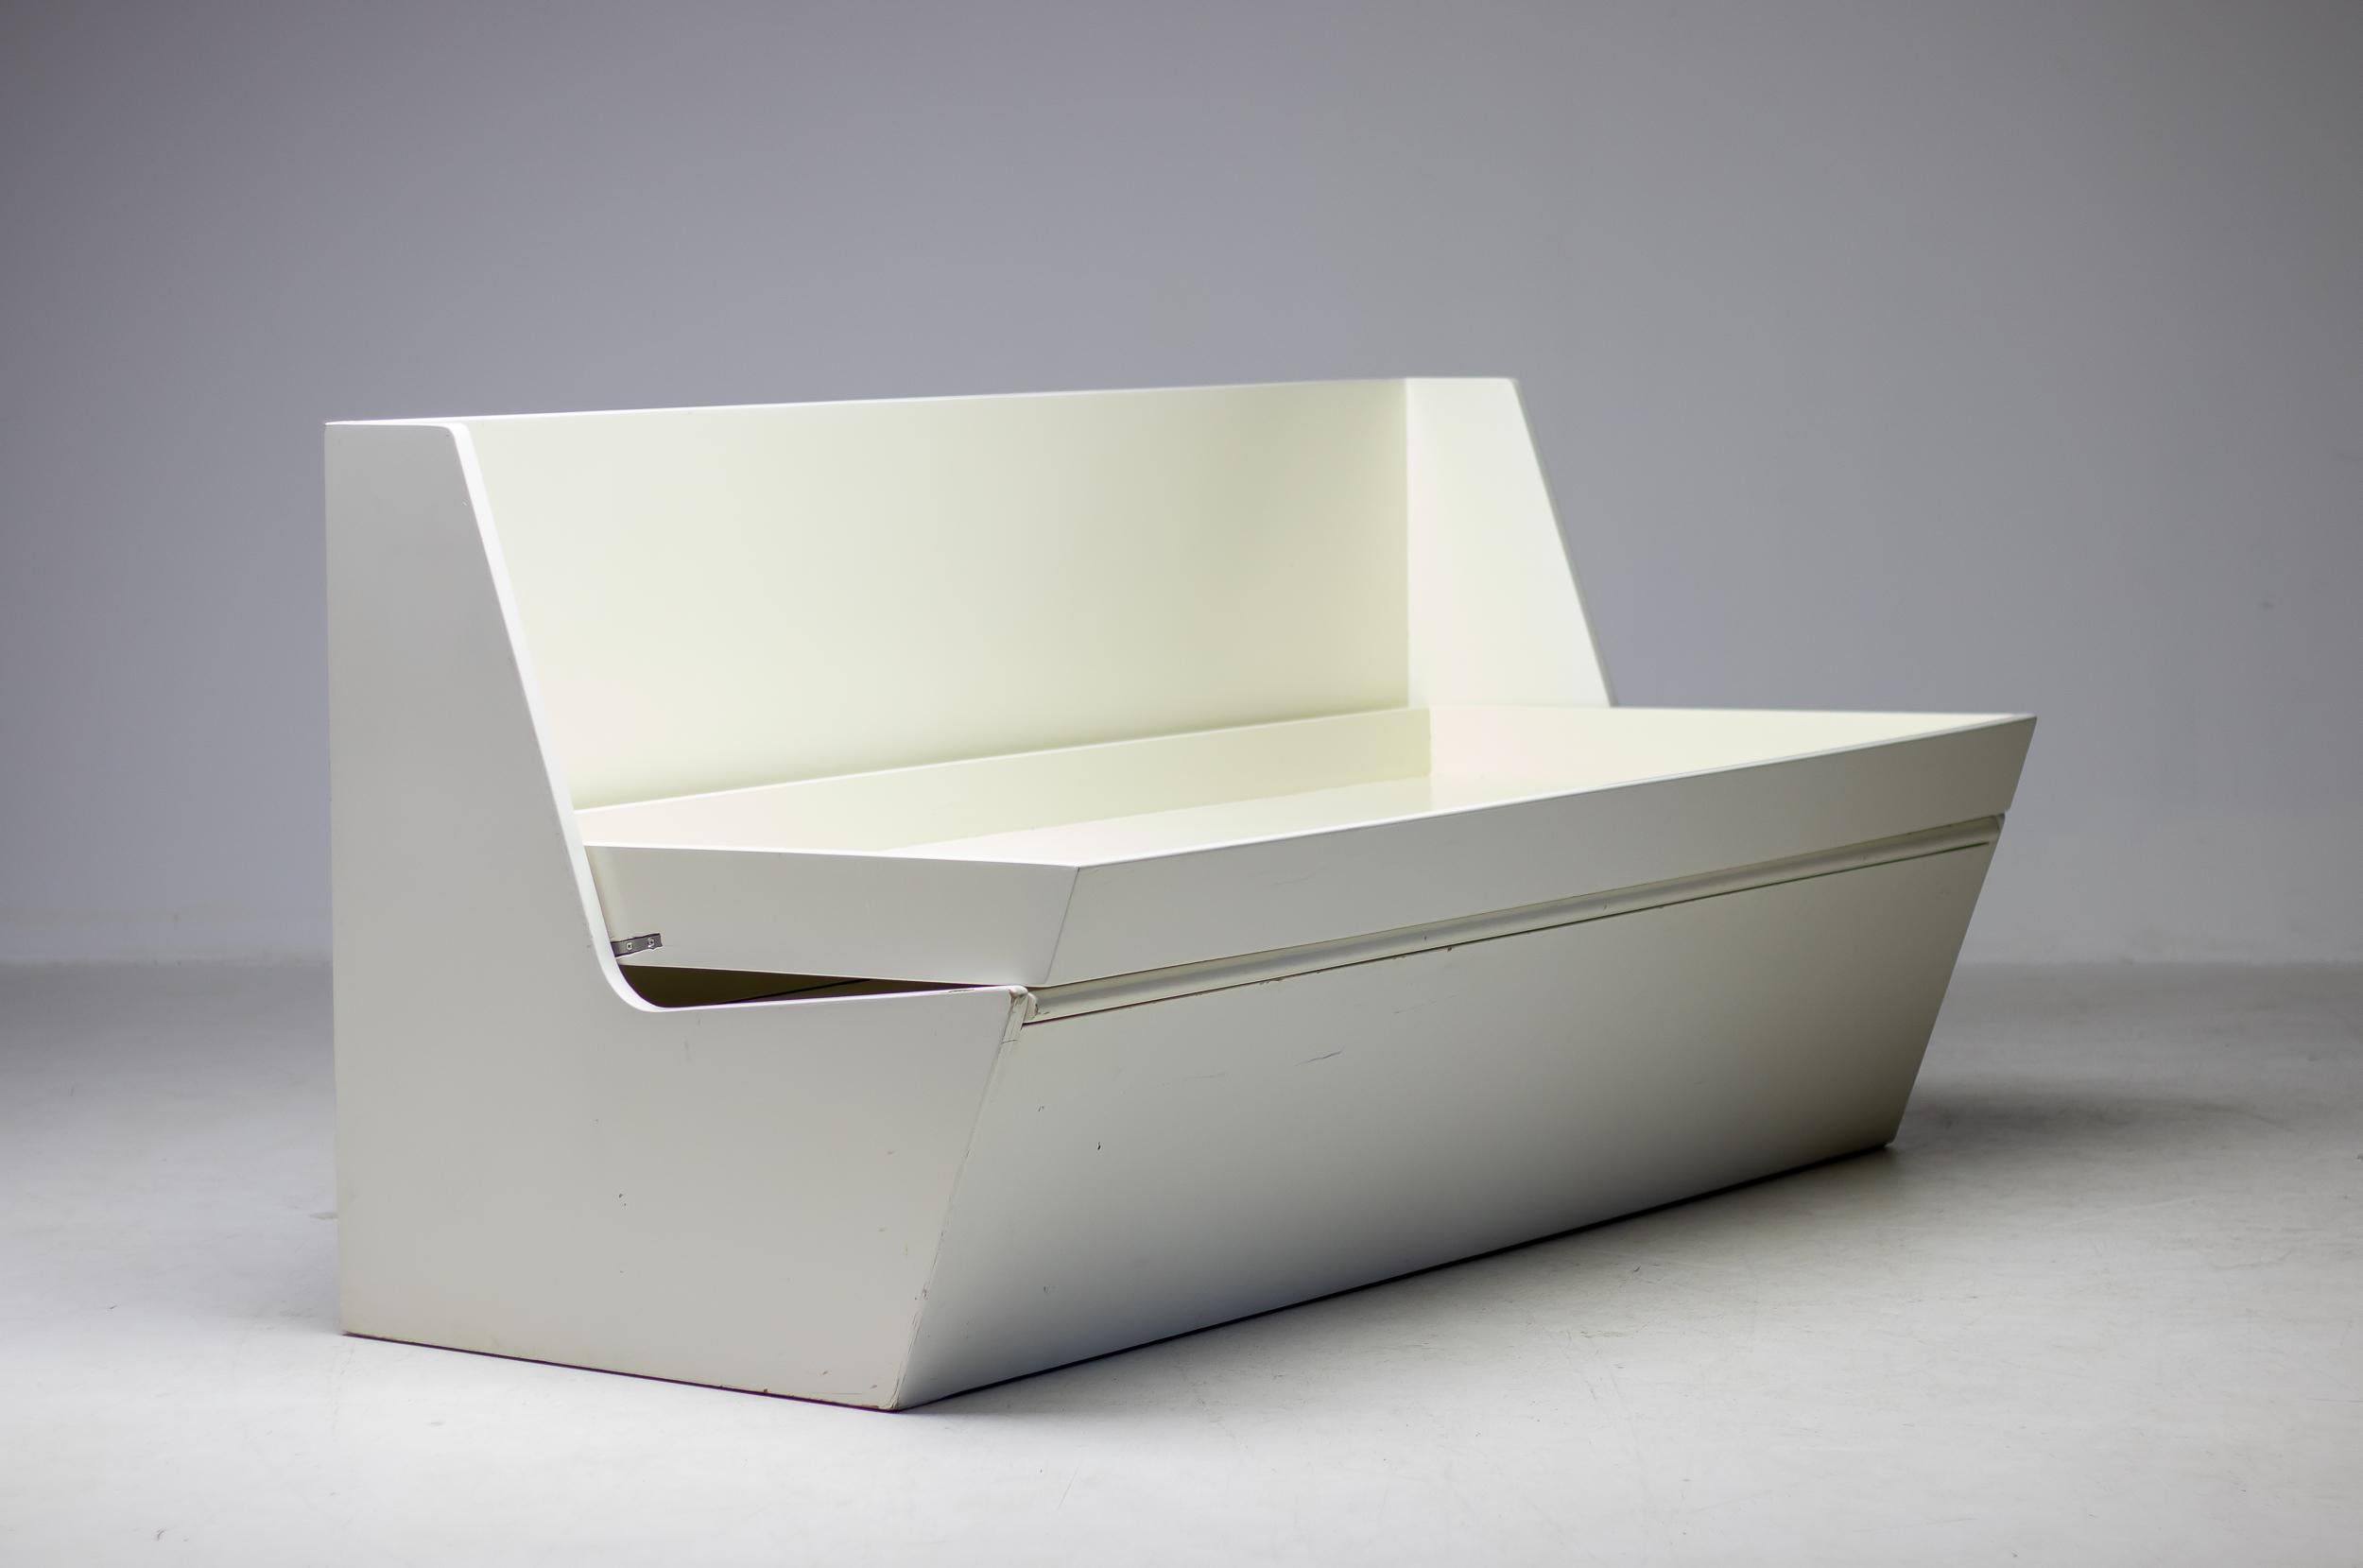 Canapé-lit R25 original de Gerrit Rietveld, exceptionnellement rare, en bois d'épicéa, conçu en 1936 pour Metz & Co. Le dossier se replie pour former un lit et le siège recouvre un compartiment de rangement.
Un exemplaire similaire de ce canapé fait